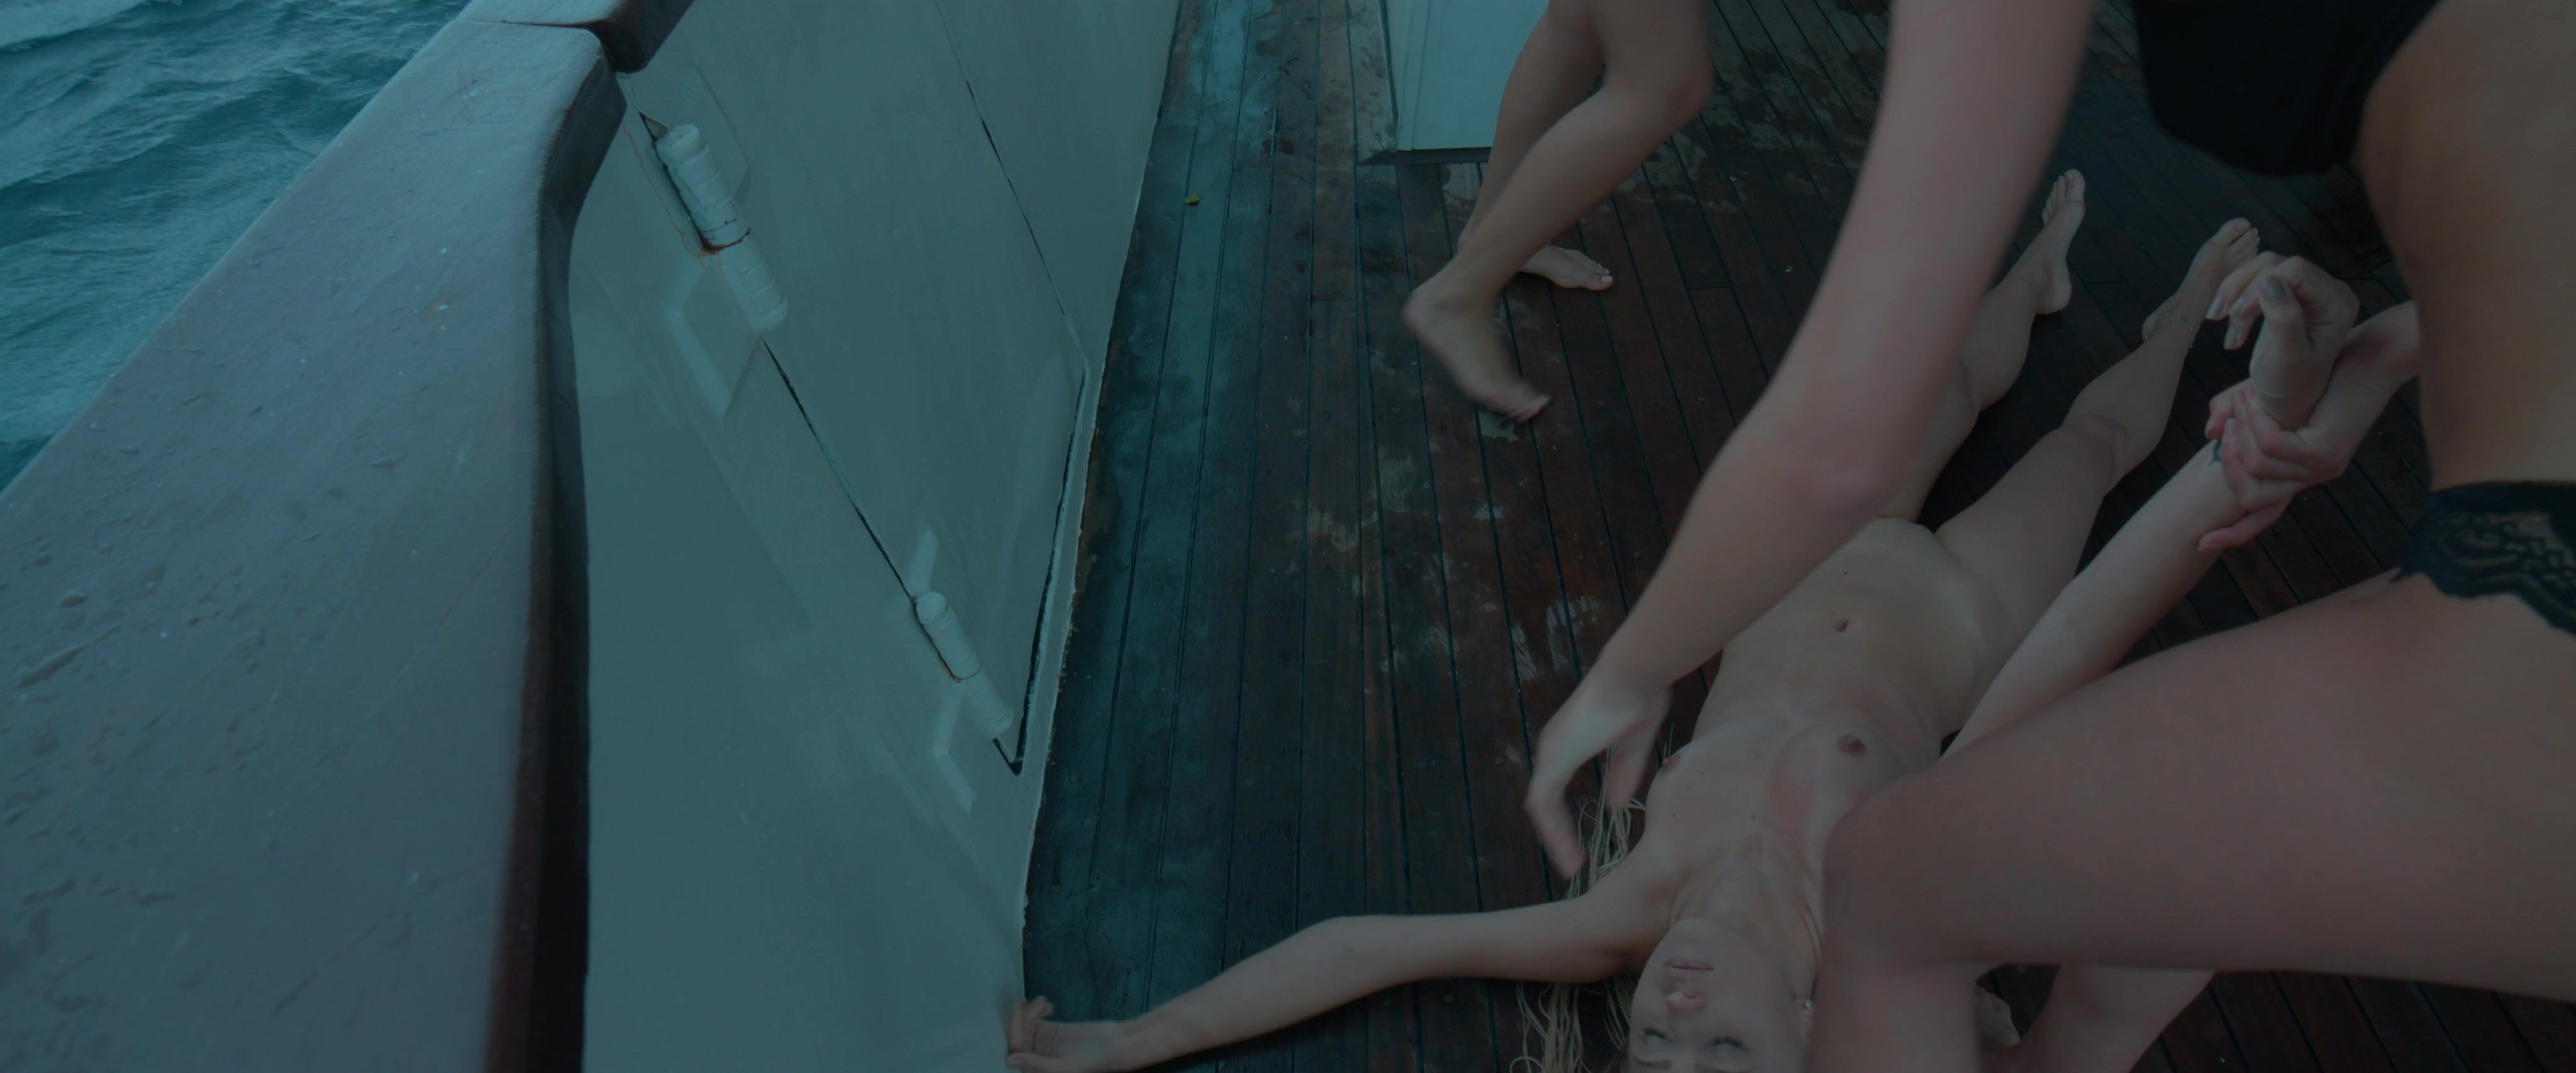 Selena Rose Nude Art Movie - Hallway (Best Erotic Music) Buttplug